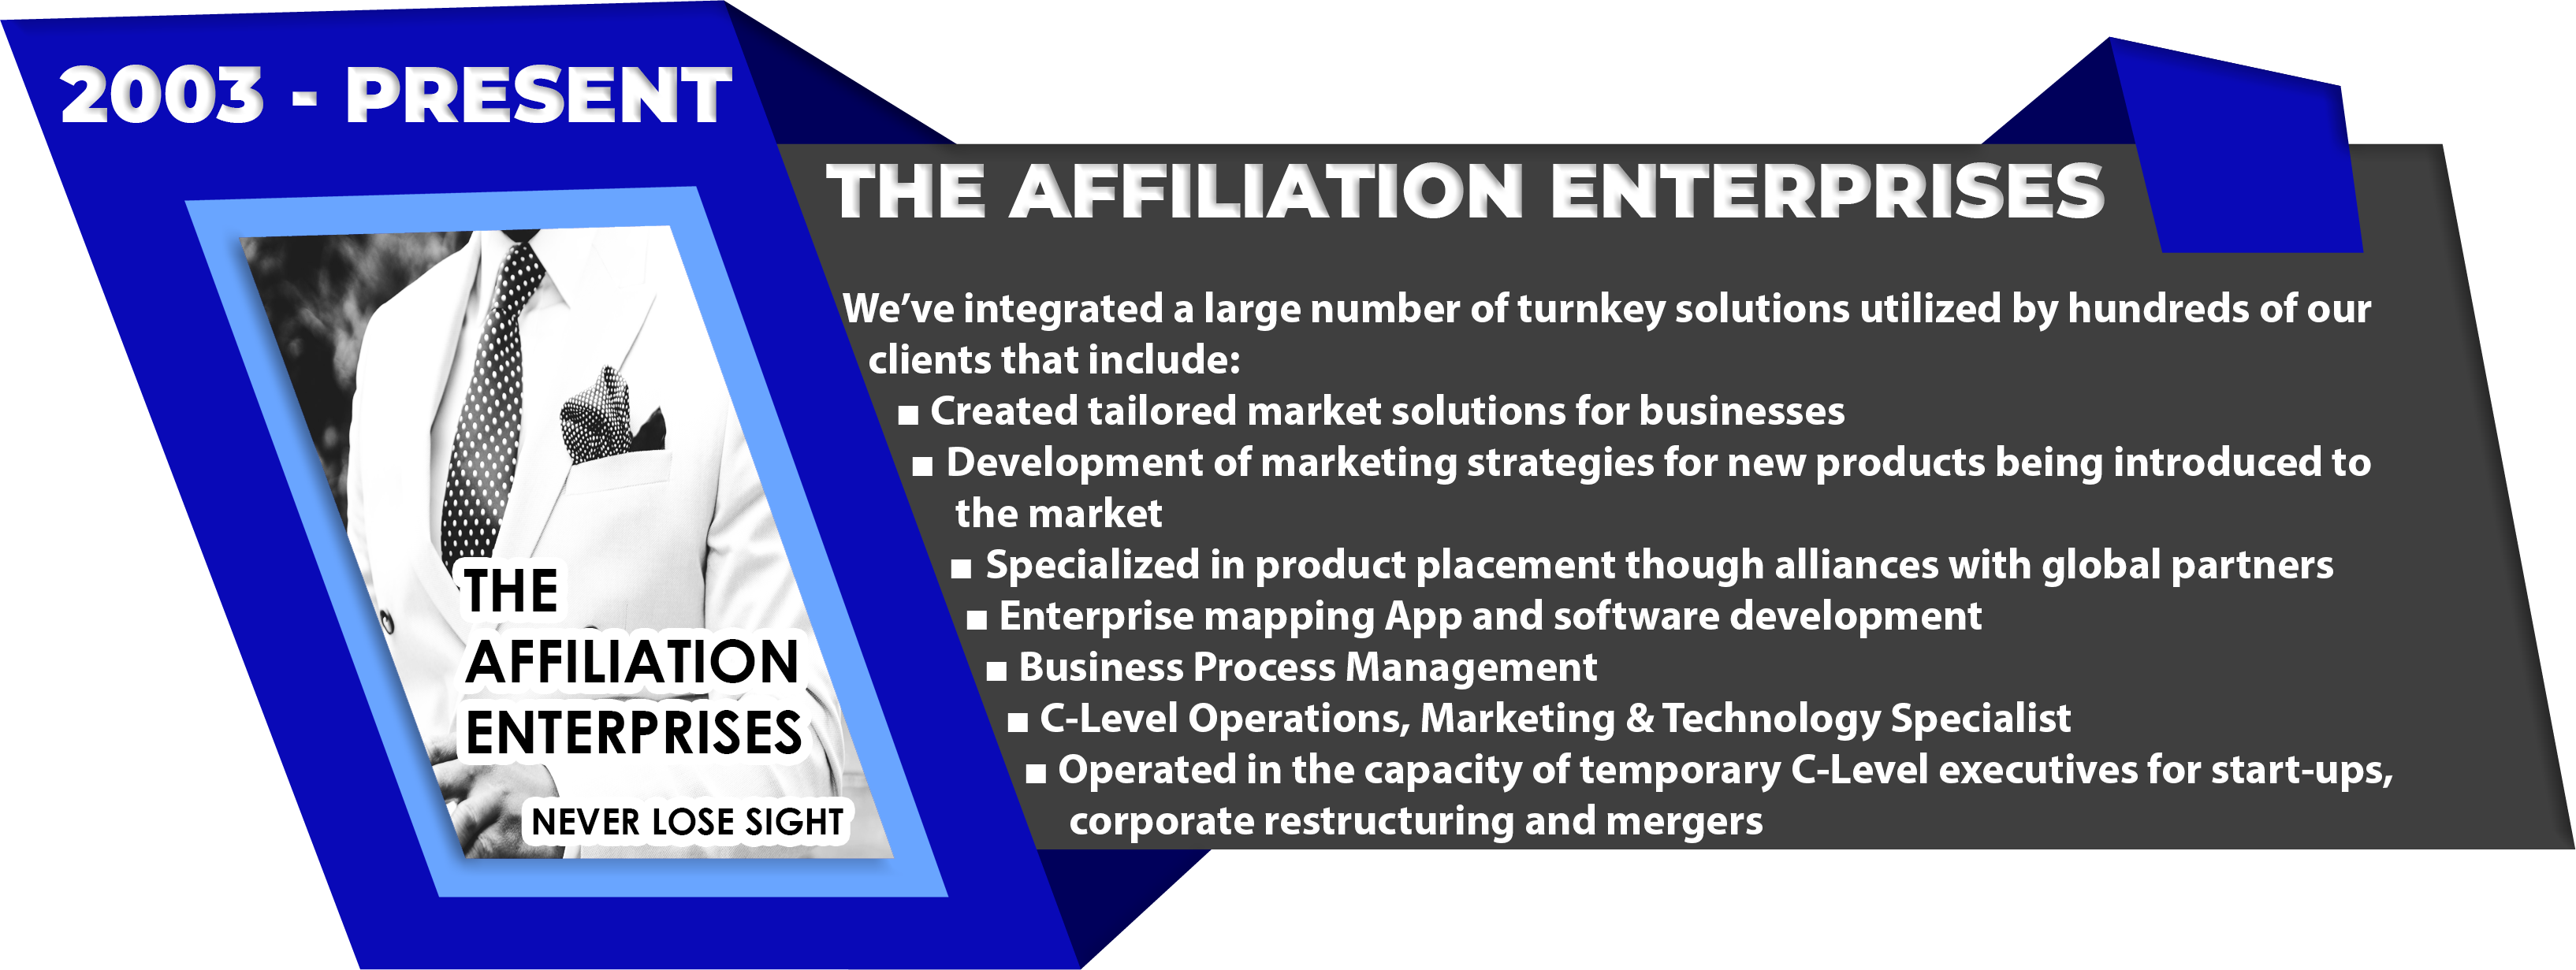 The Affiliation Enterprises 2003 – Present